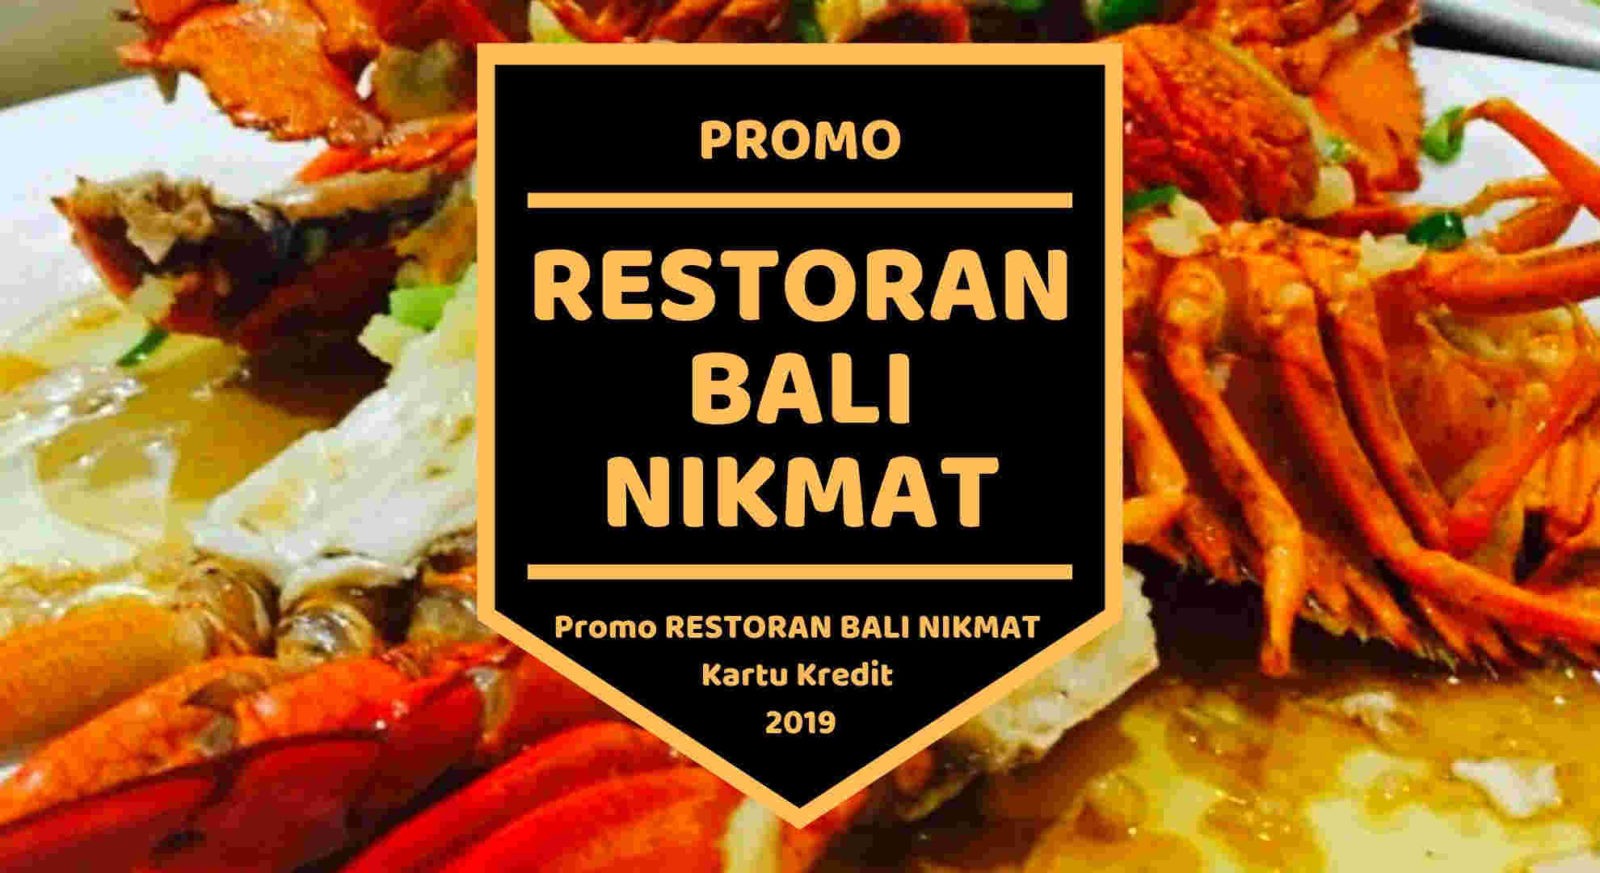 Promo Restoran Bali Nikmat